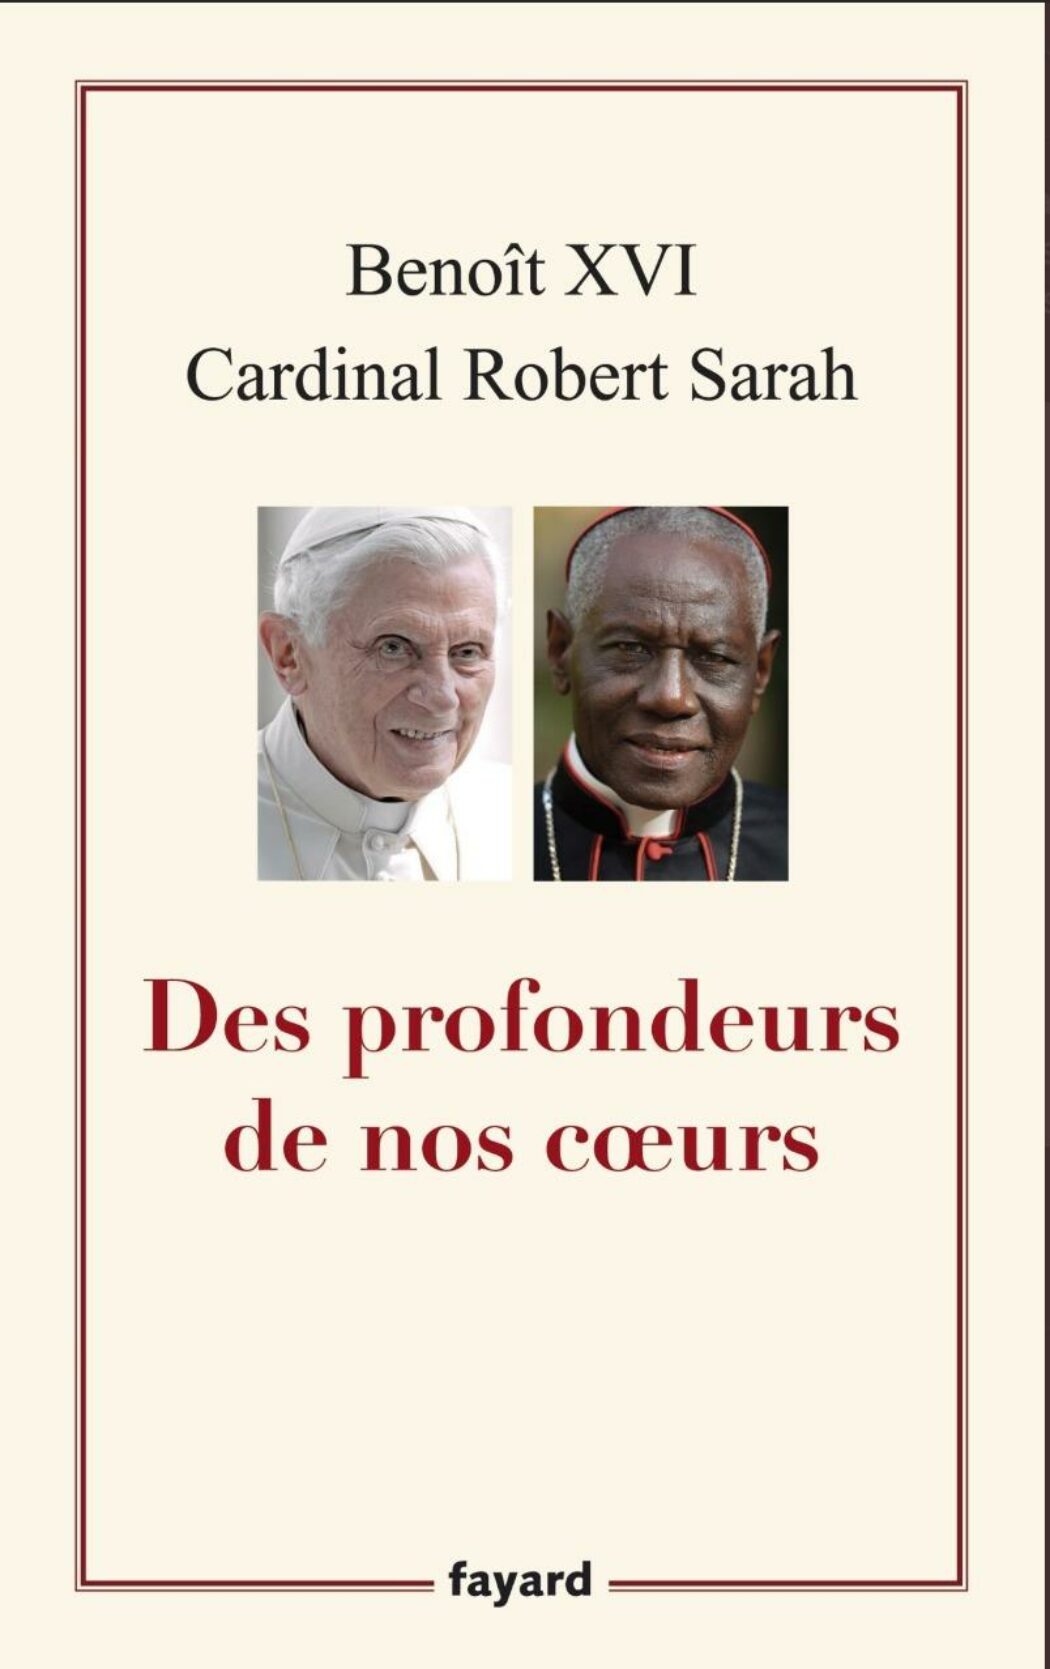 Aucun malentendu entre Benoît XVI et le cardinal Sarah